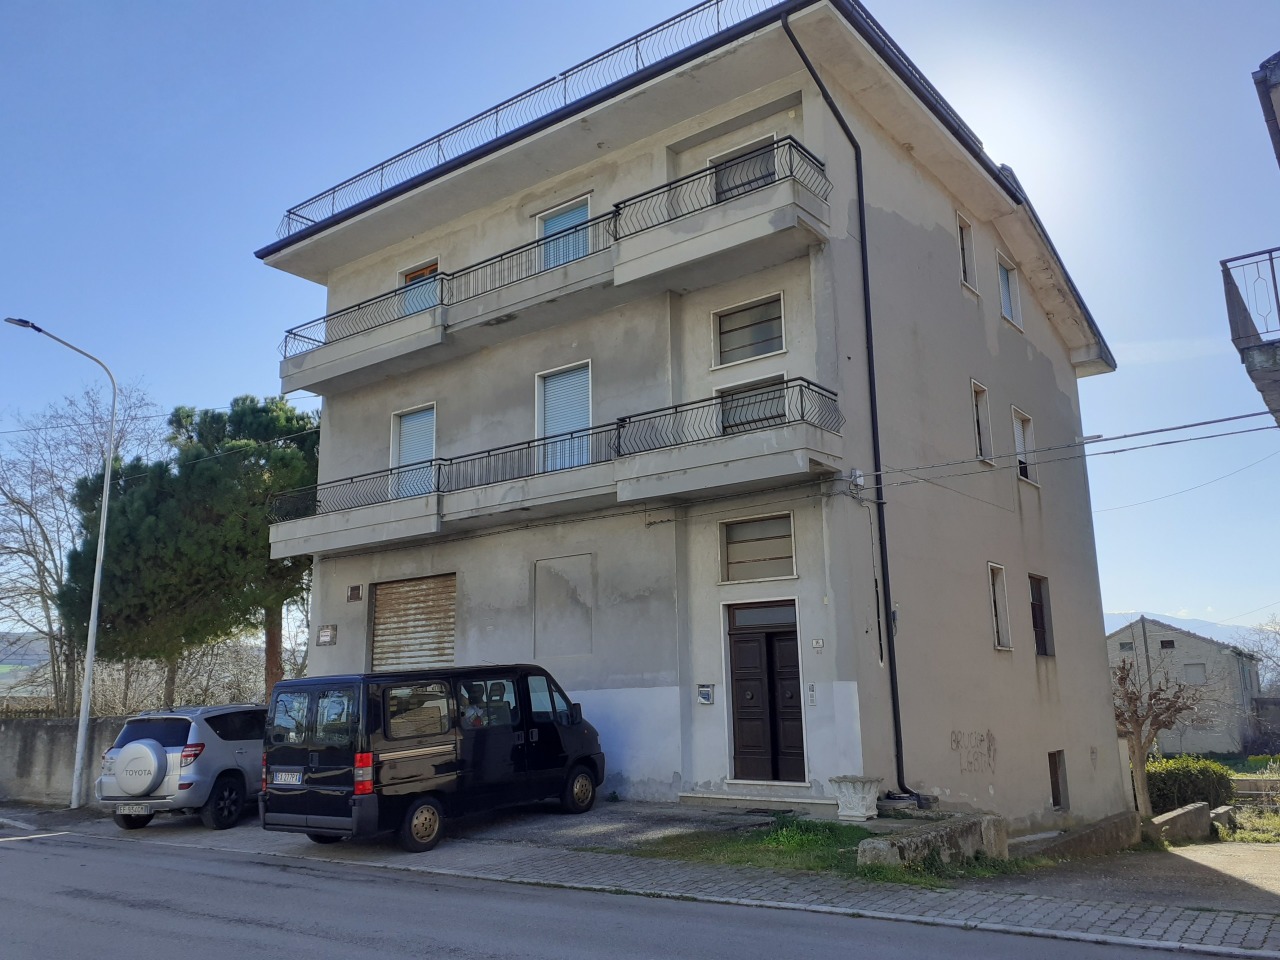 Appartamento in vendita a Monsampolo del Tronto, 7 locali, prezzo € 80.000 | PortaleAgenzieImmobiliari.it